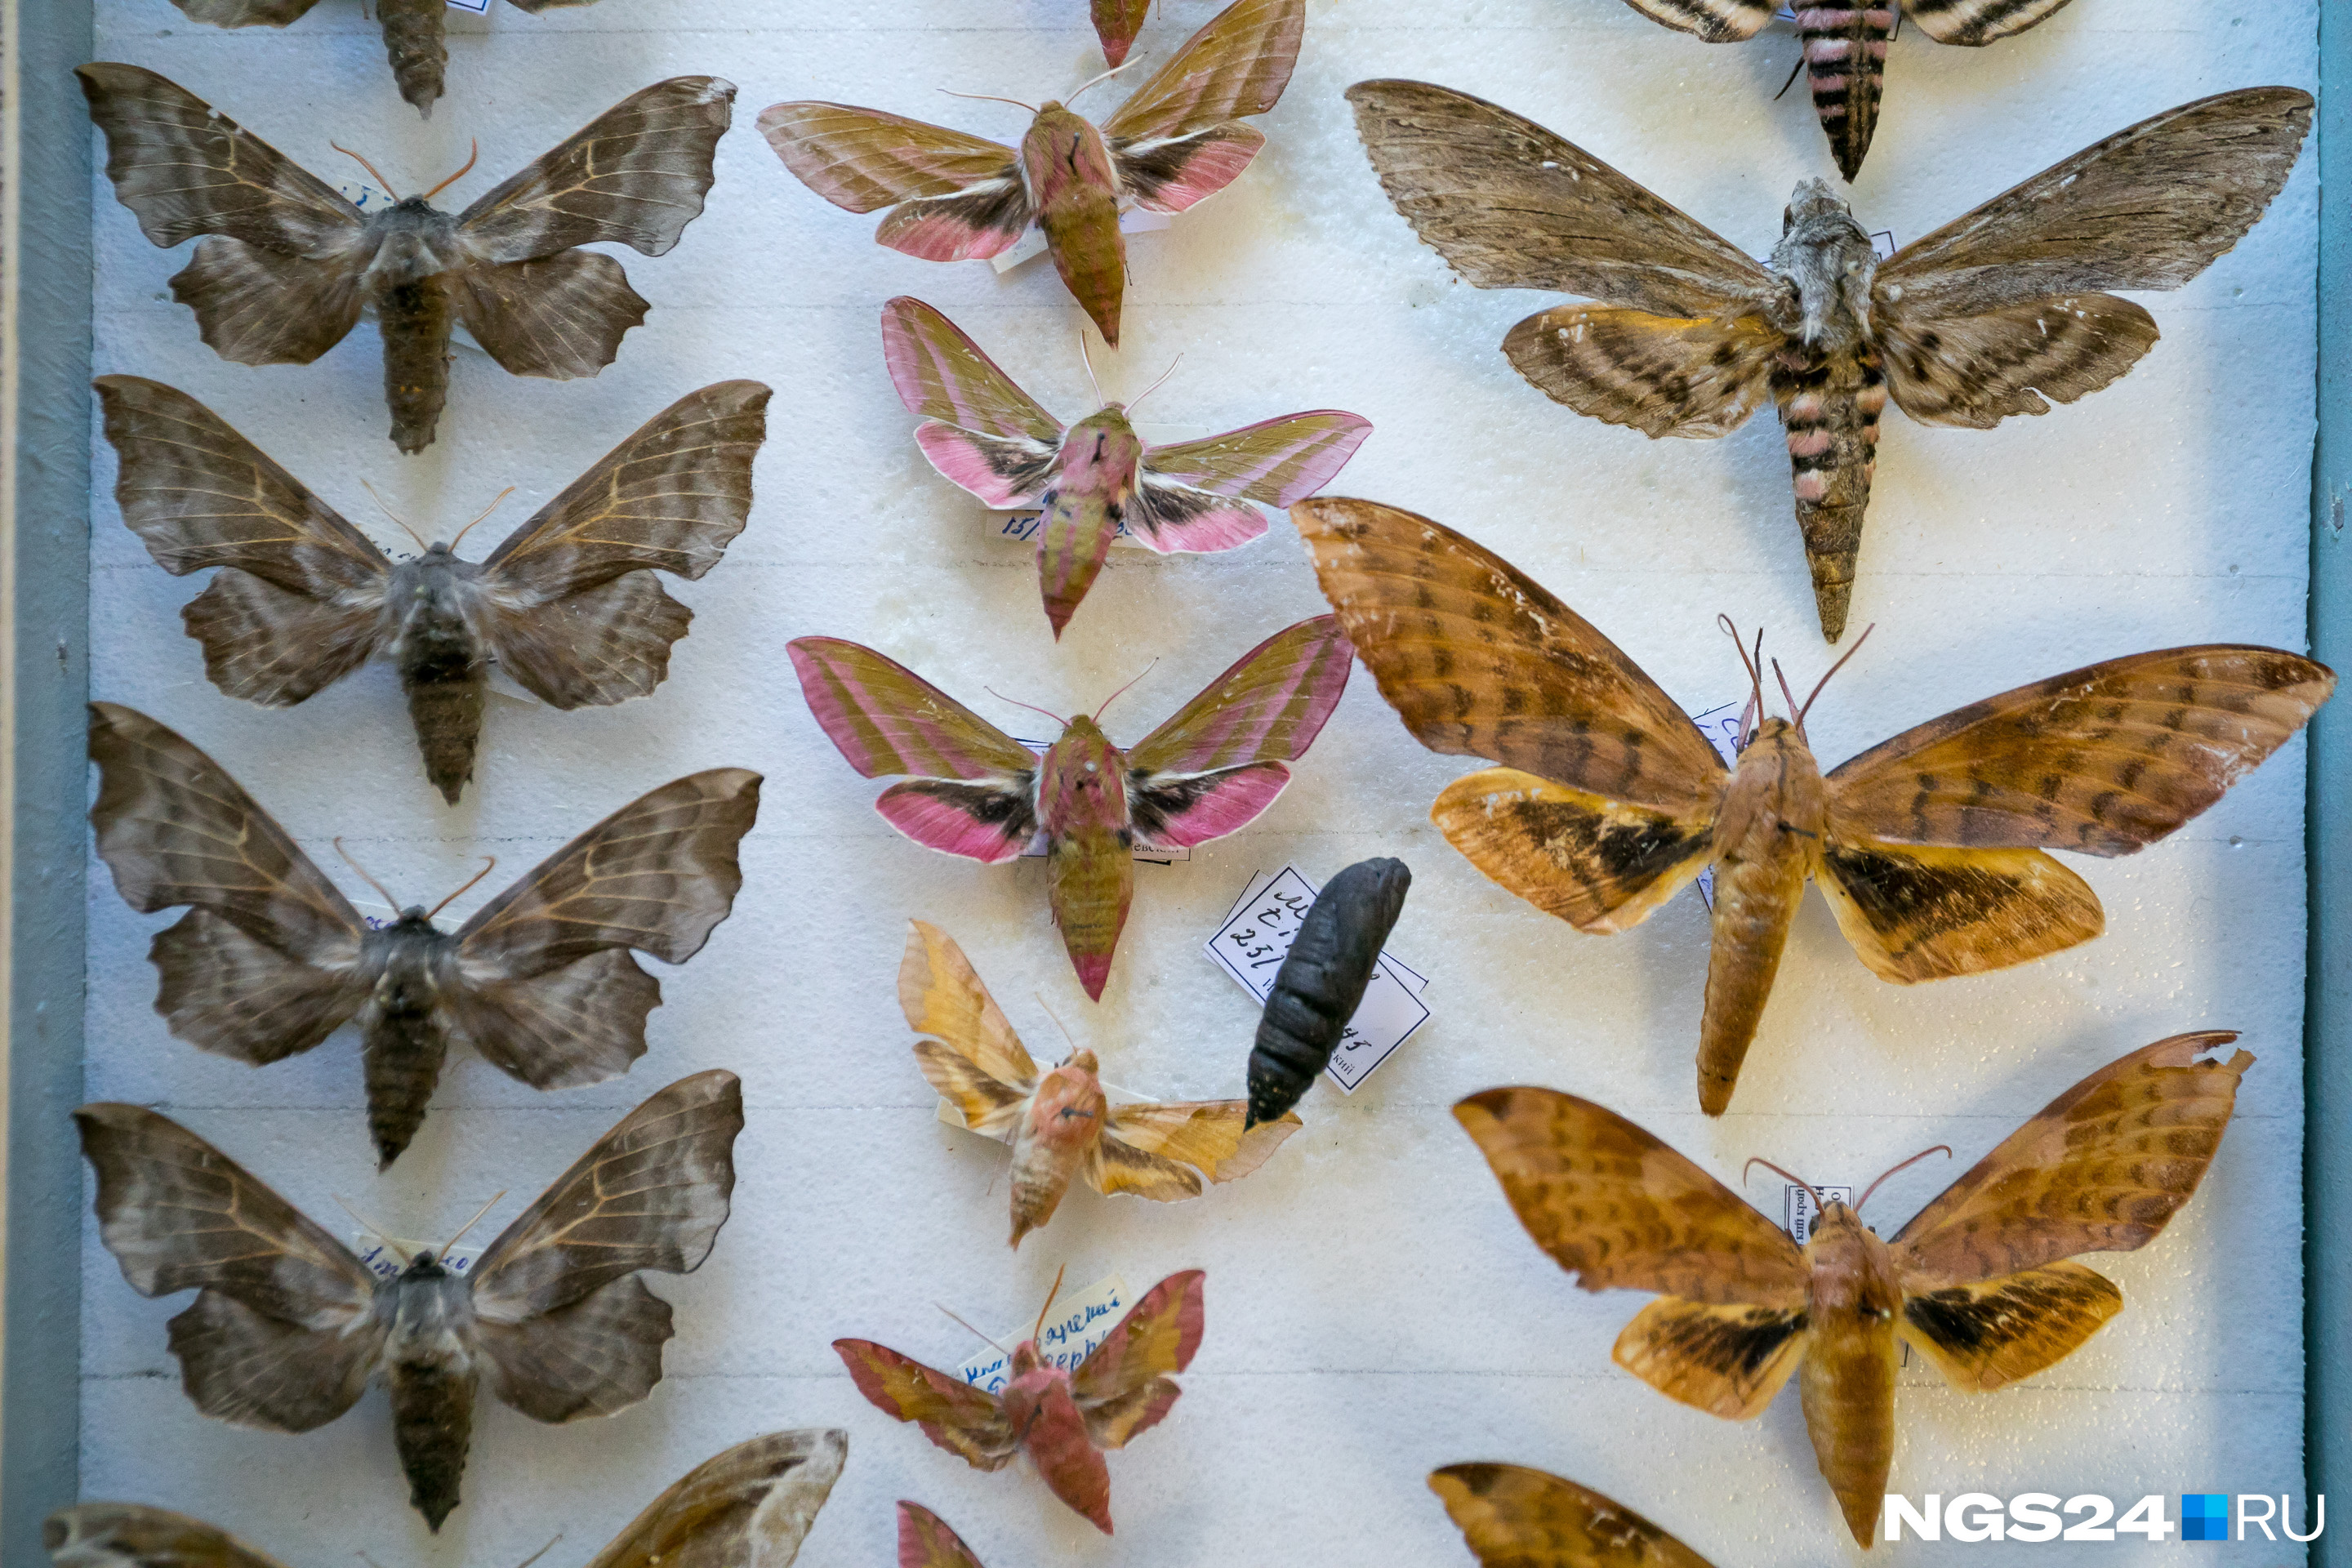 Бабочки-бражники быстро летают и умеют замирать в воздухе, как колибри